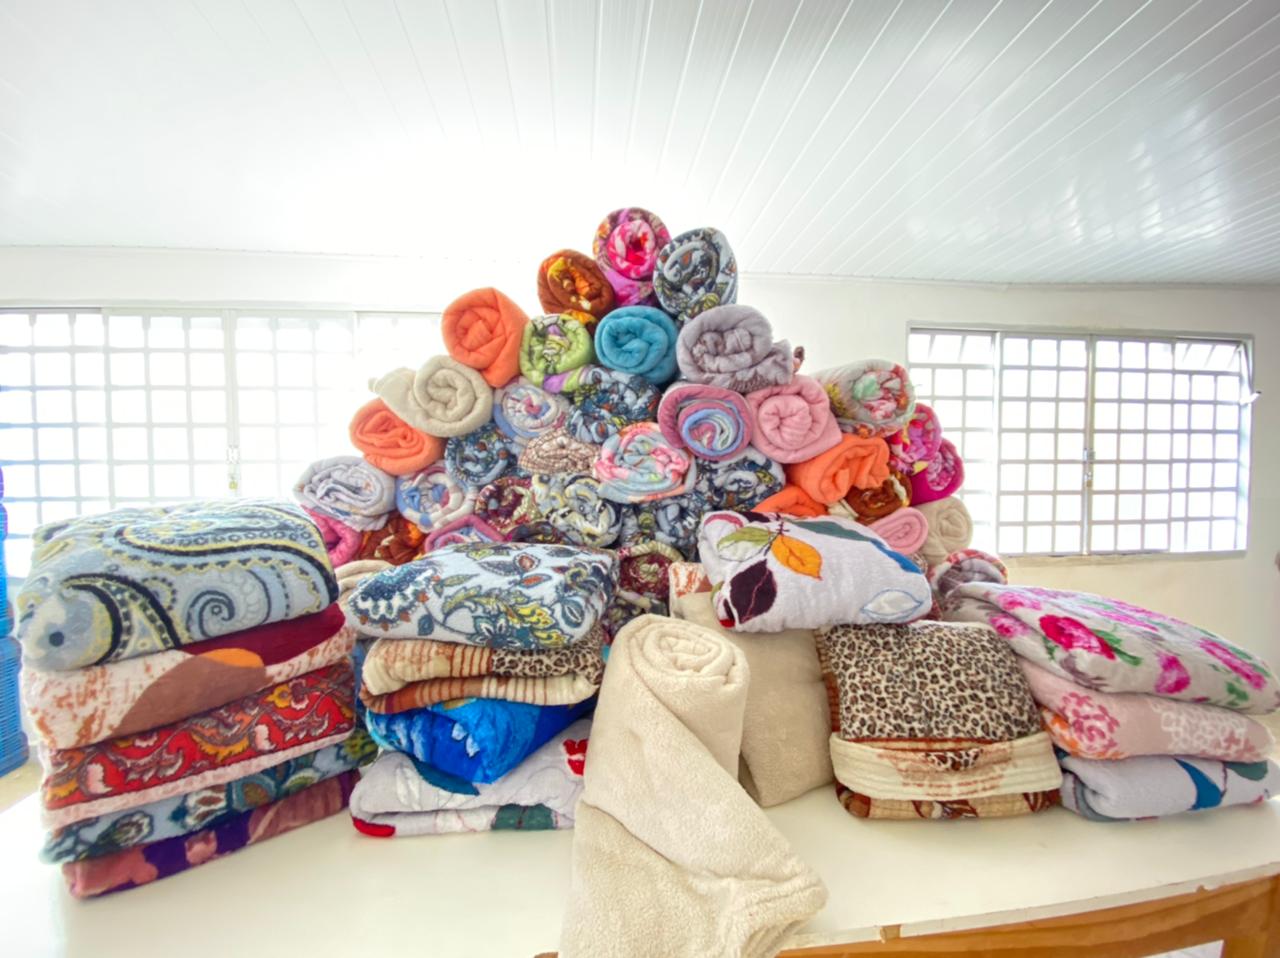 Secretaria de Desenvolvimento Social de Itararé (SP) recebe doação anônima de 90 cobertores